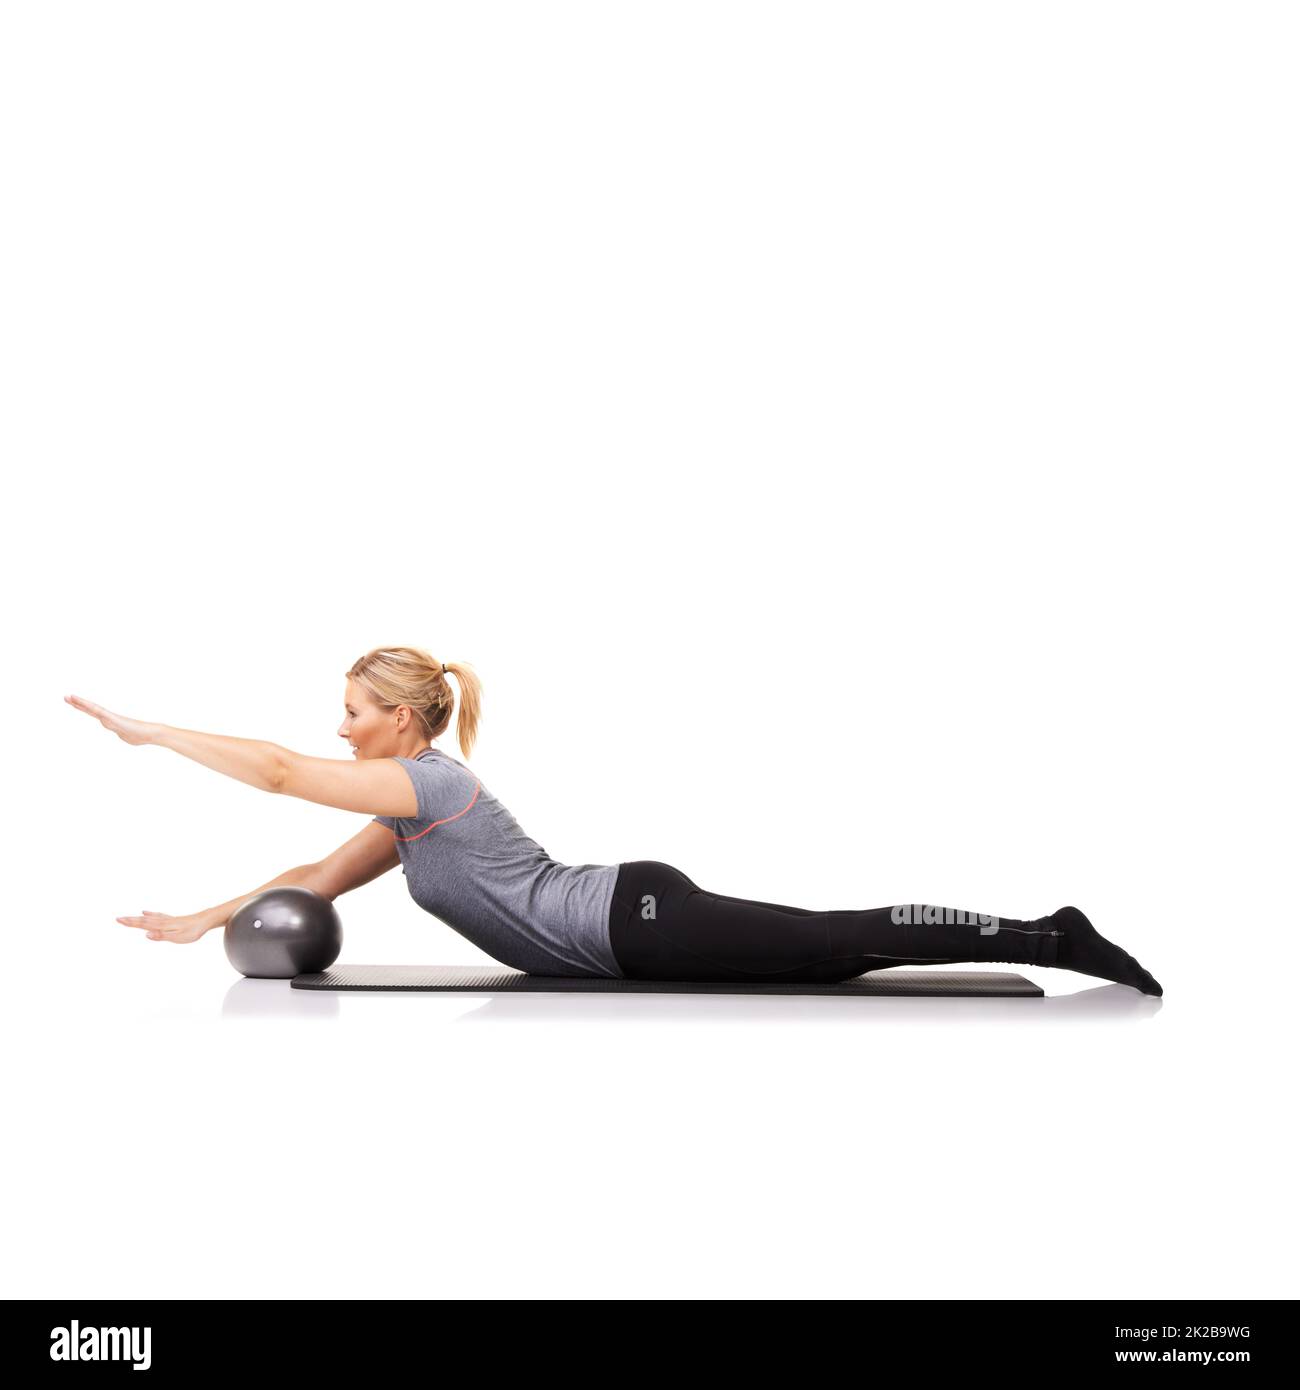 Ihr Workout bringt Ergebnisse. Eine junge Frau, die einen Übungsball im Liegen benutzt - isoliert. Stockfoto